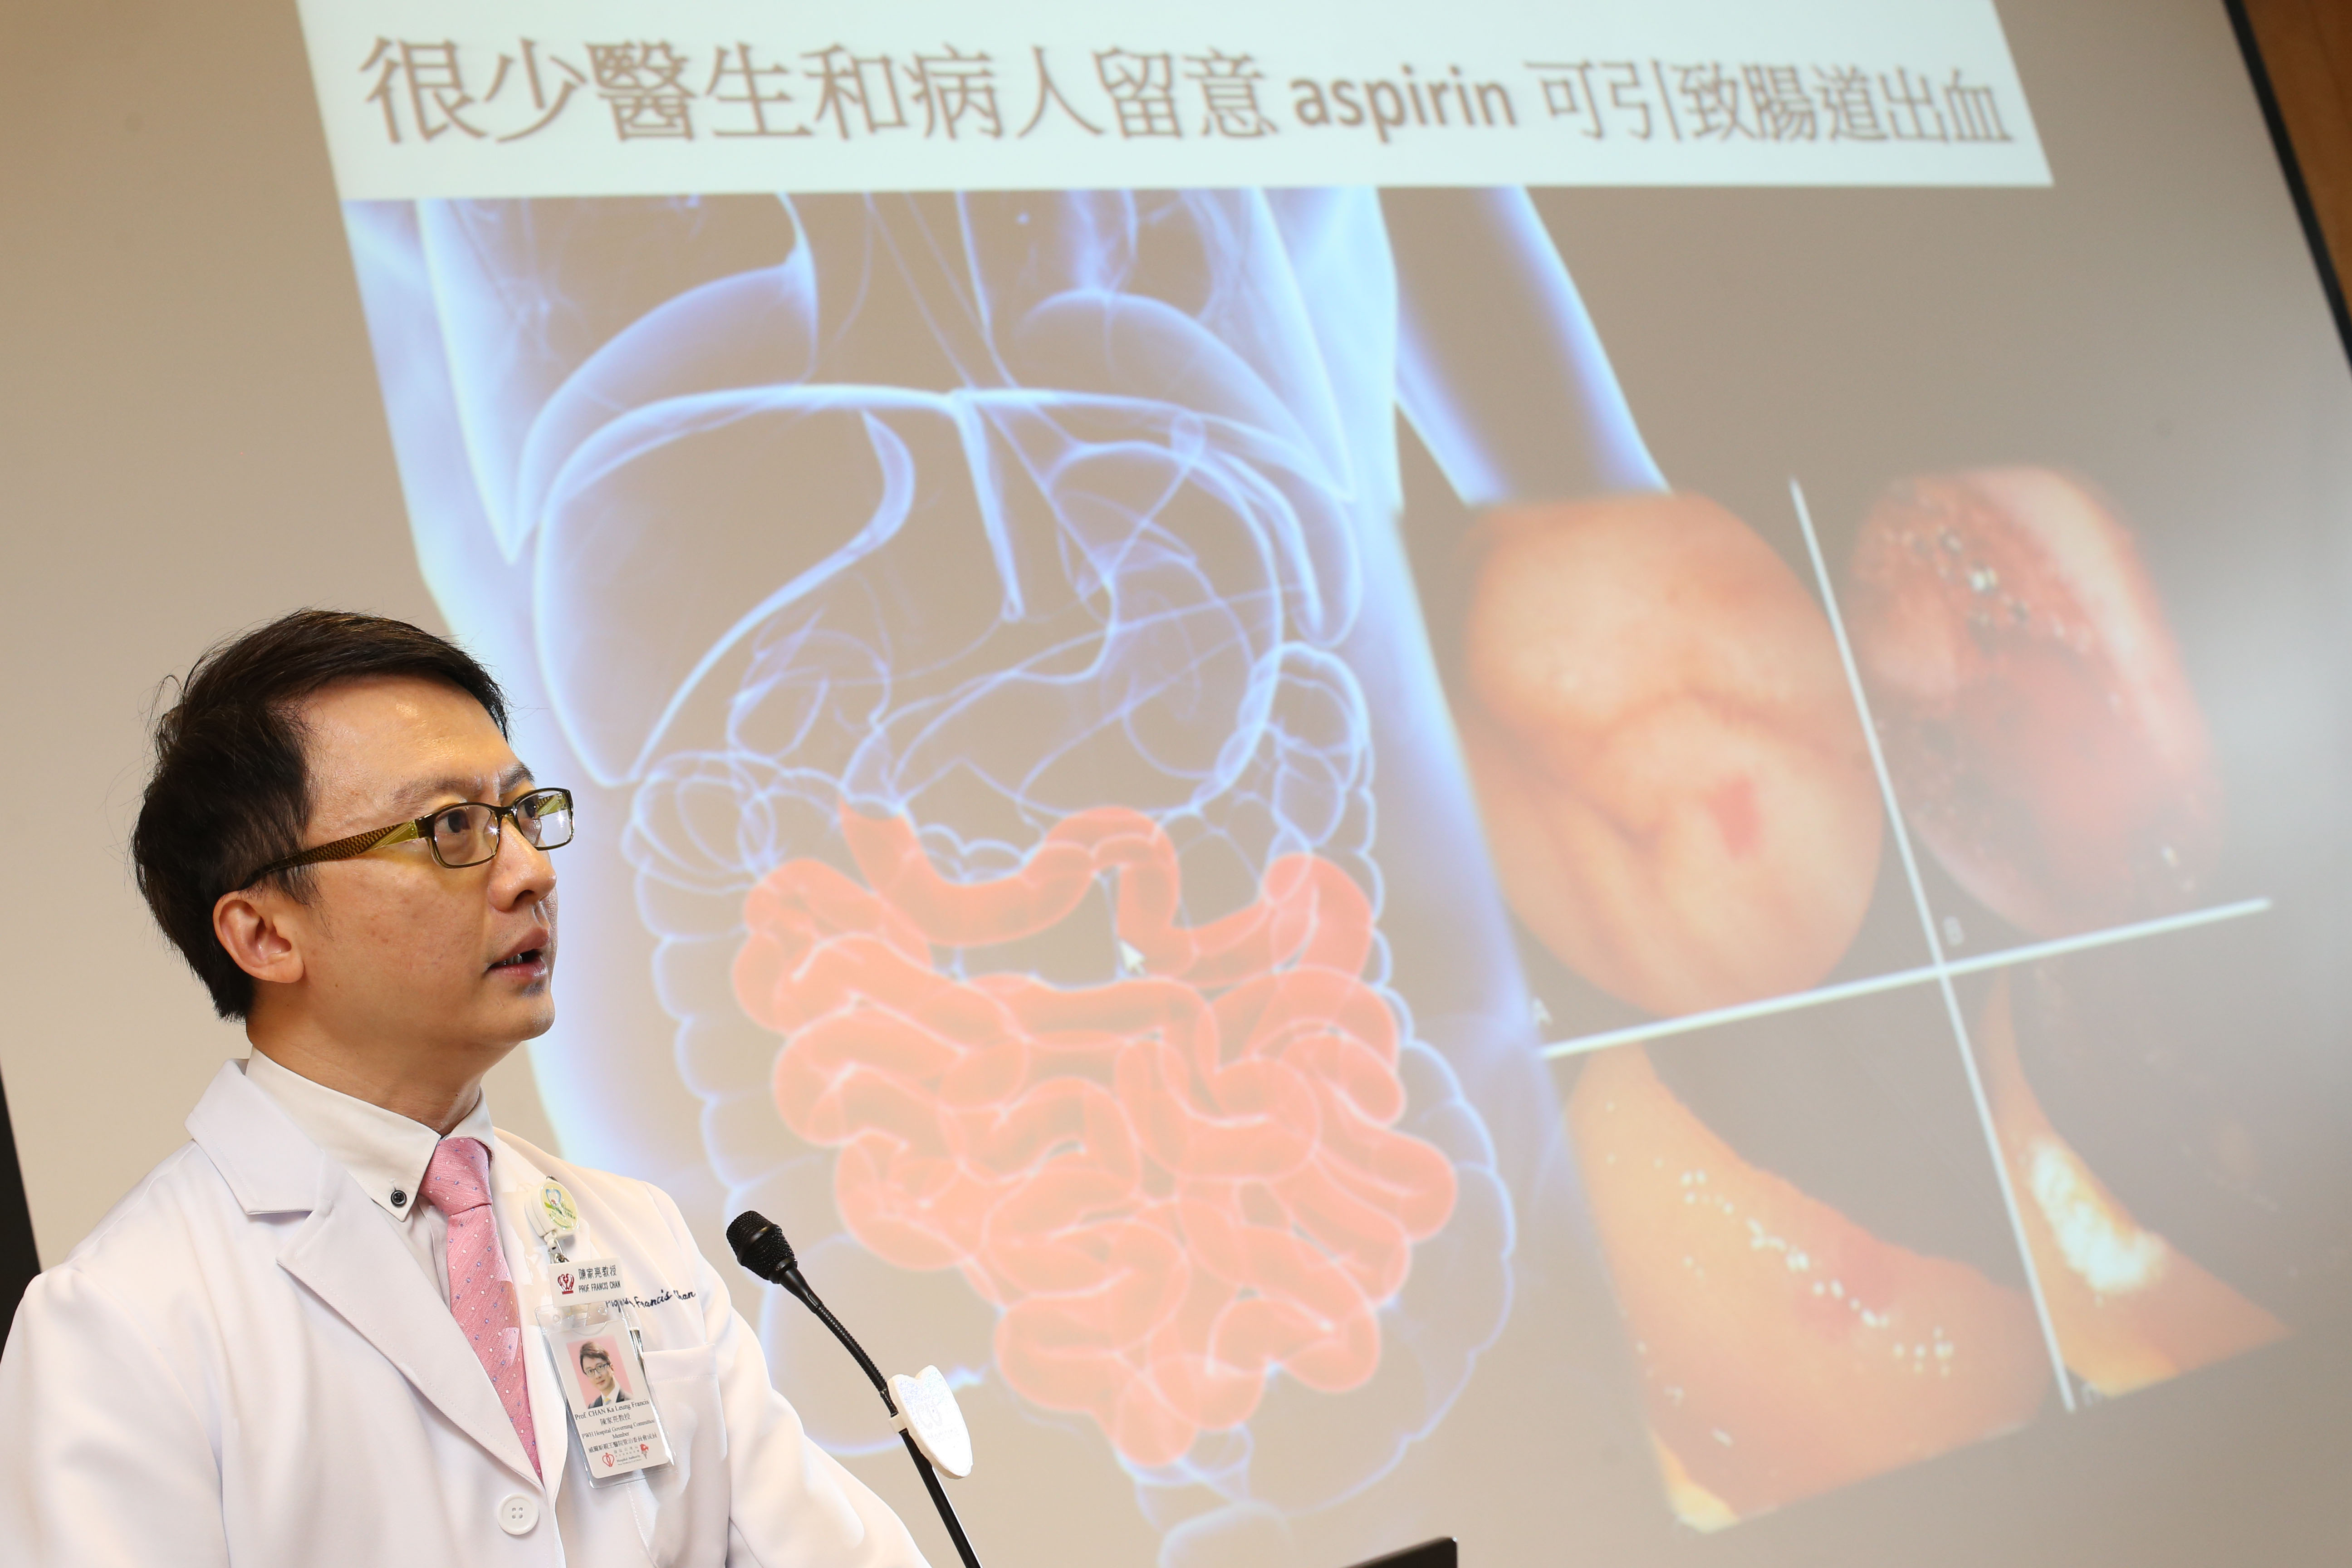 陳家亮教授指出，亞士匹靈對胃部的副作用已是眾所周知，卻很少醫生及病人意識到此藥亦可致腸道出血。